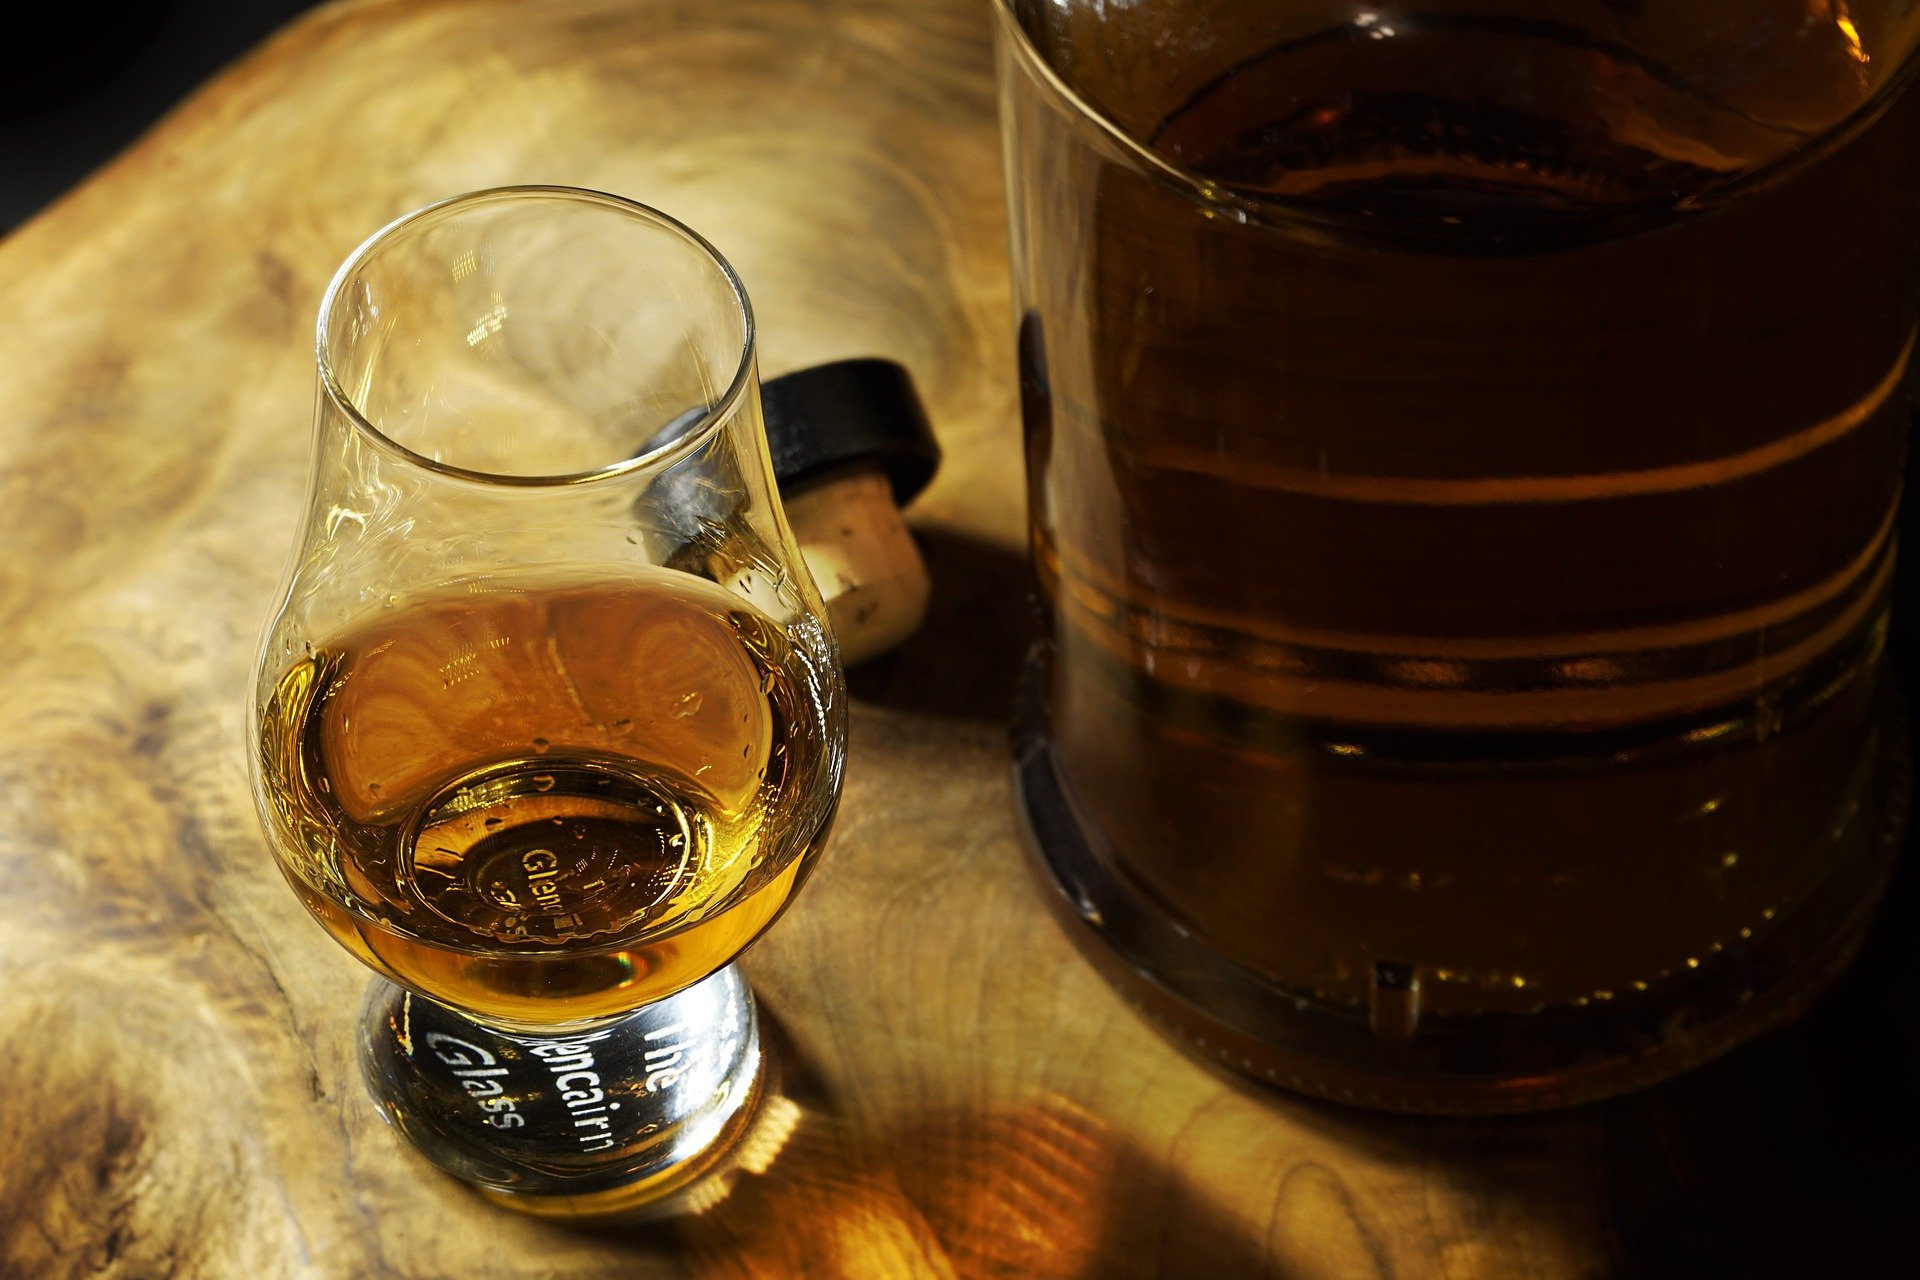 O estranho Whisky da marca Gilpin Family feito de urina